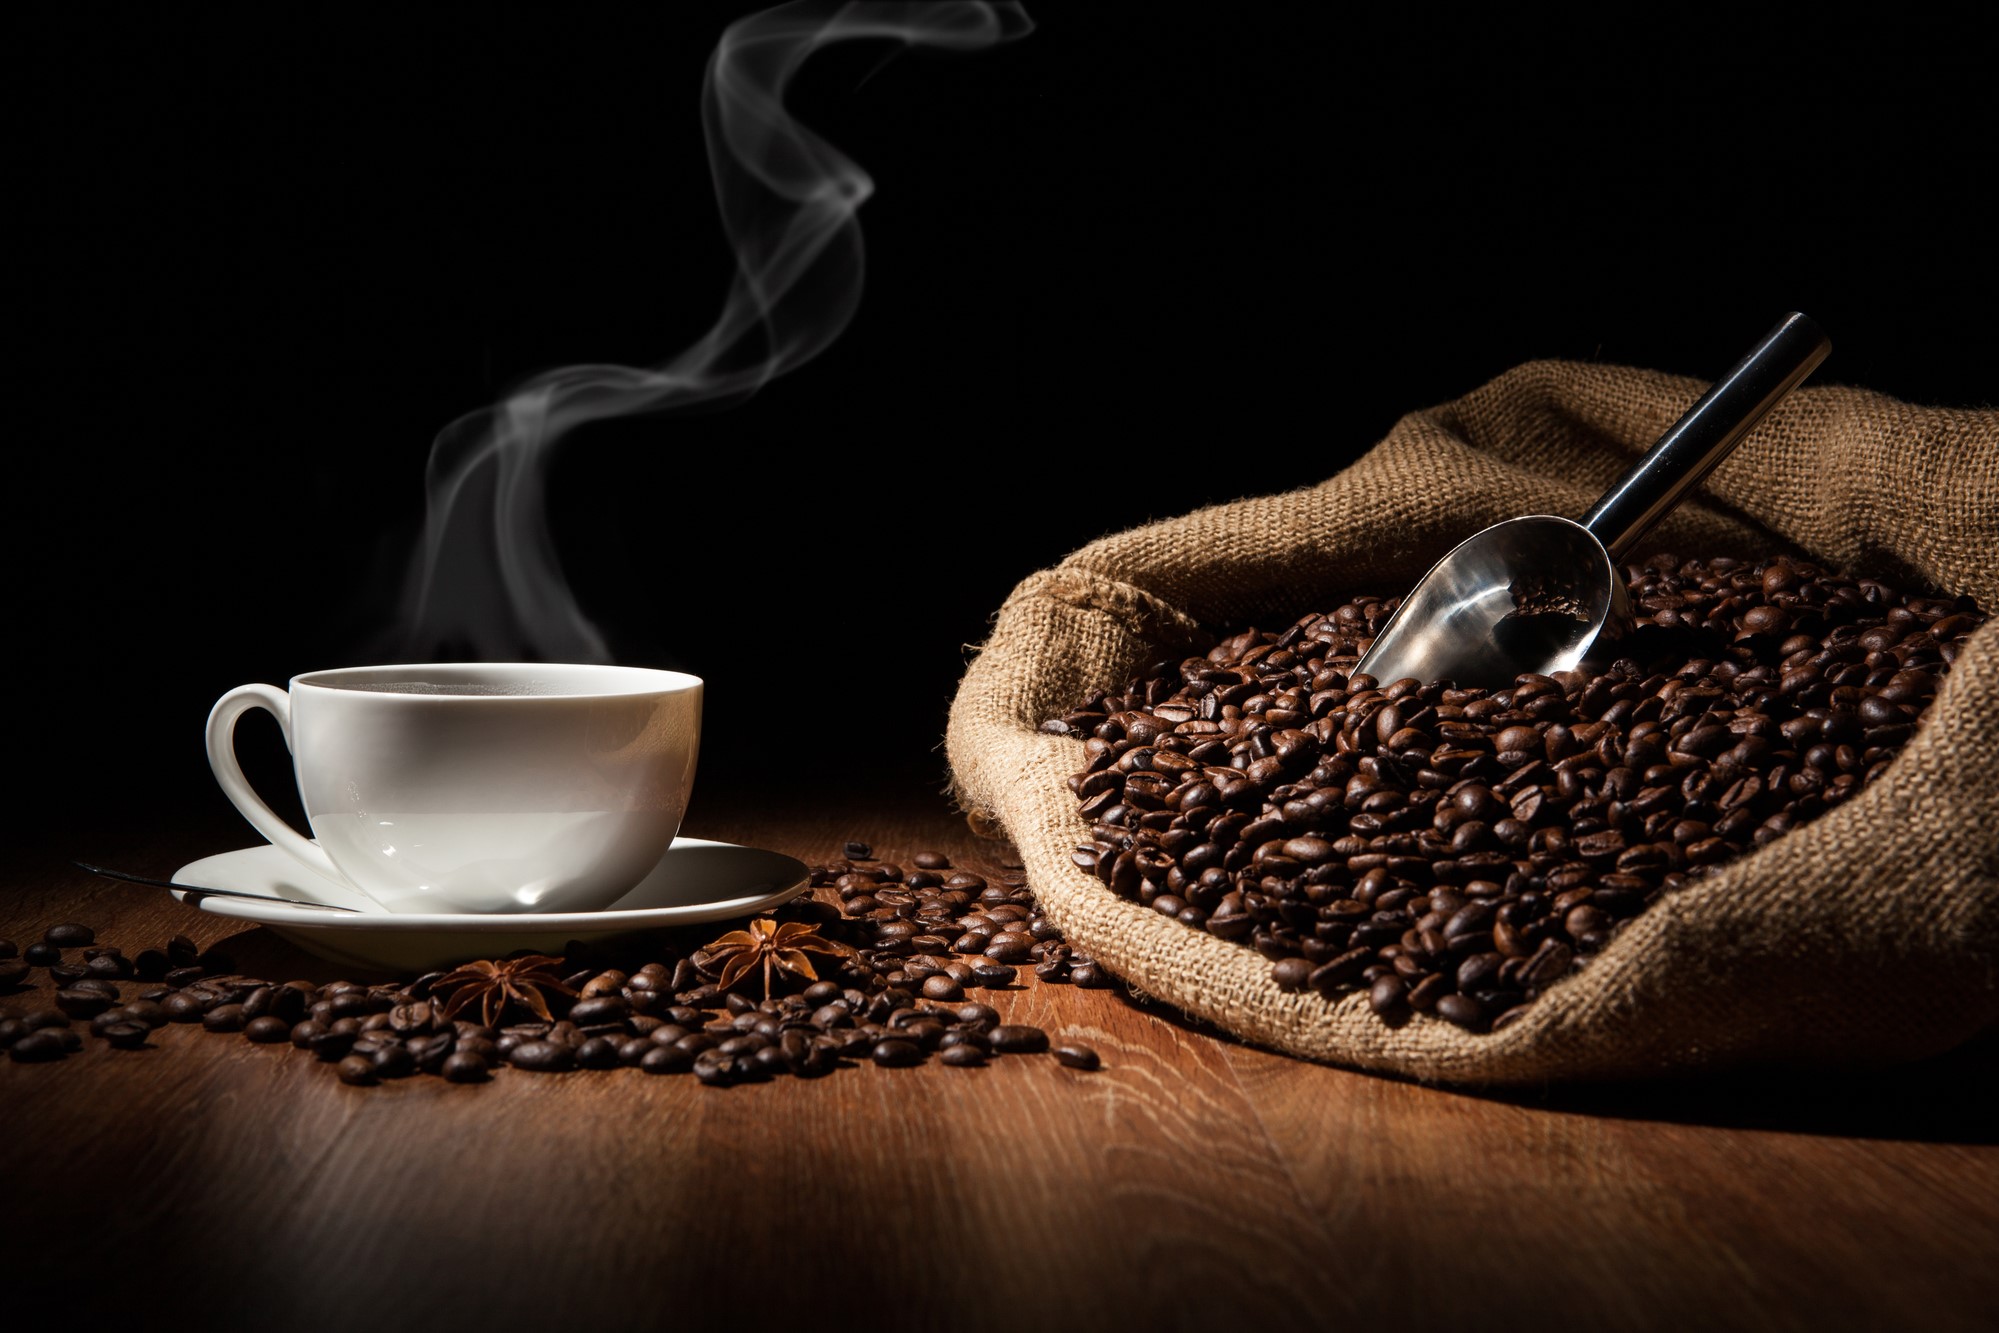 Ի՞նչն է ազդում սուրճի բույրի վրա և ինչպե՞ս կարող է այն պահպանել փաթեթավորումը: